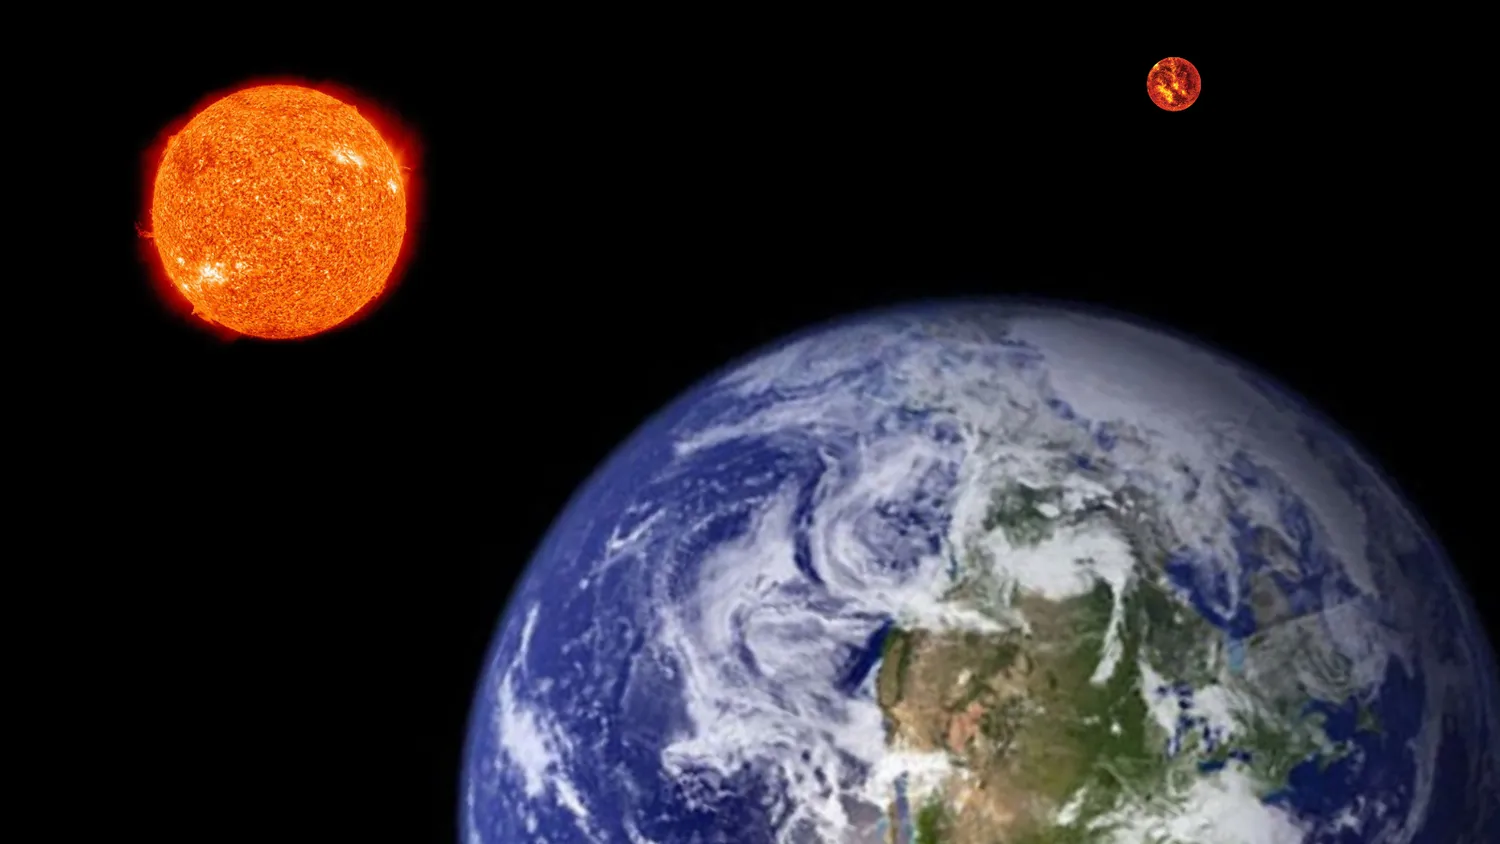 Illustration, die die Erde im Vordergrund zeigt, mit der Sonne und einem weiter entfernten eindringenden Stern im Hintergrund.